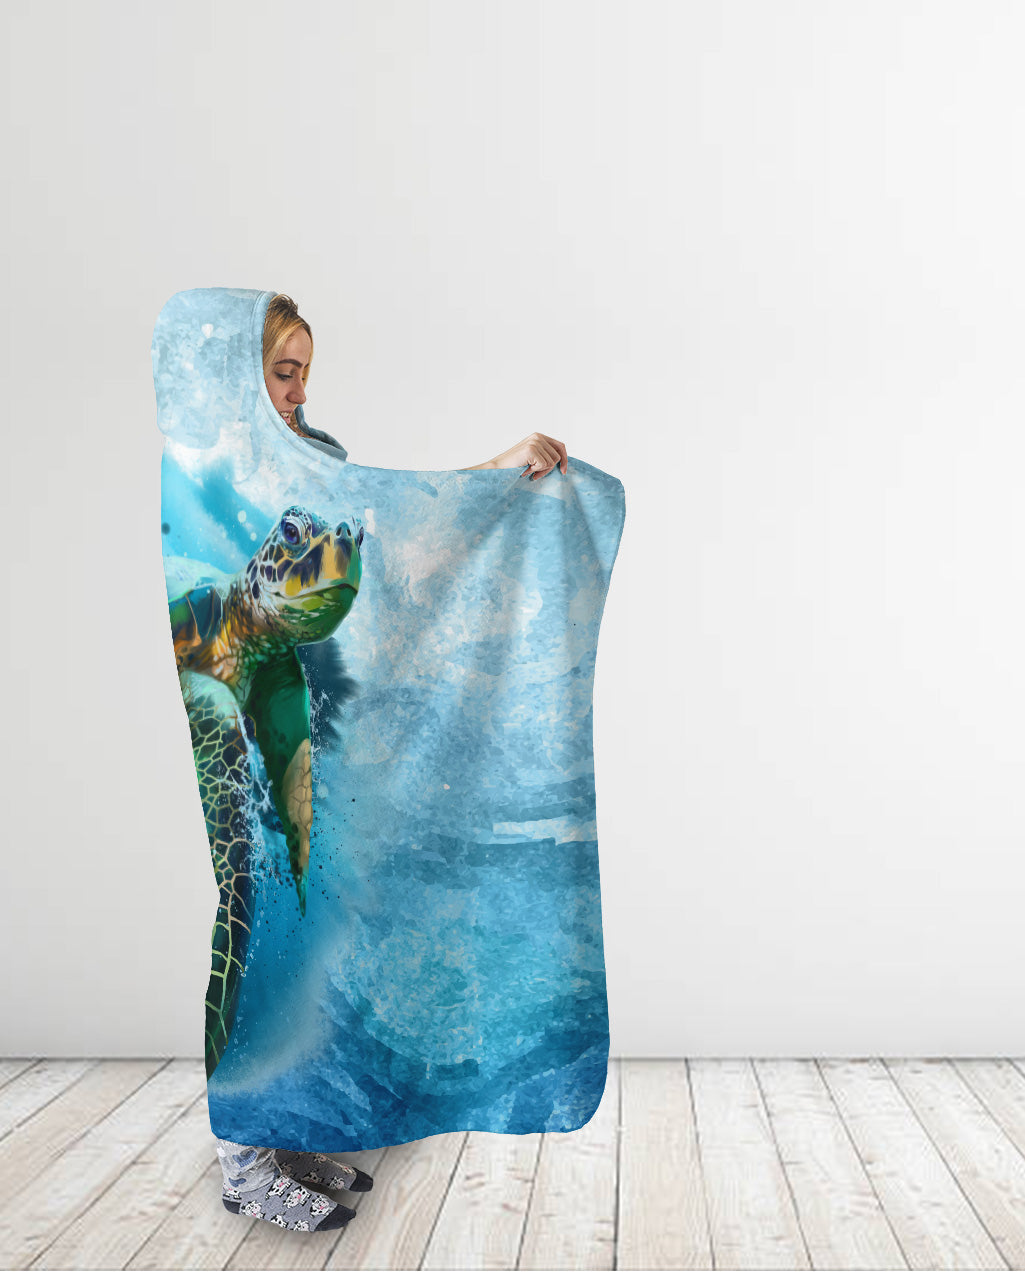 Swimming Sea Turtle Watercolor Hooded Blanket